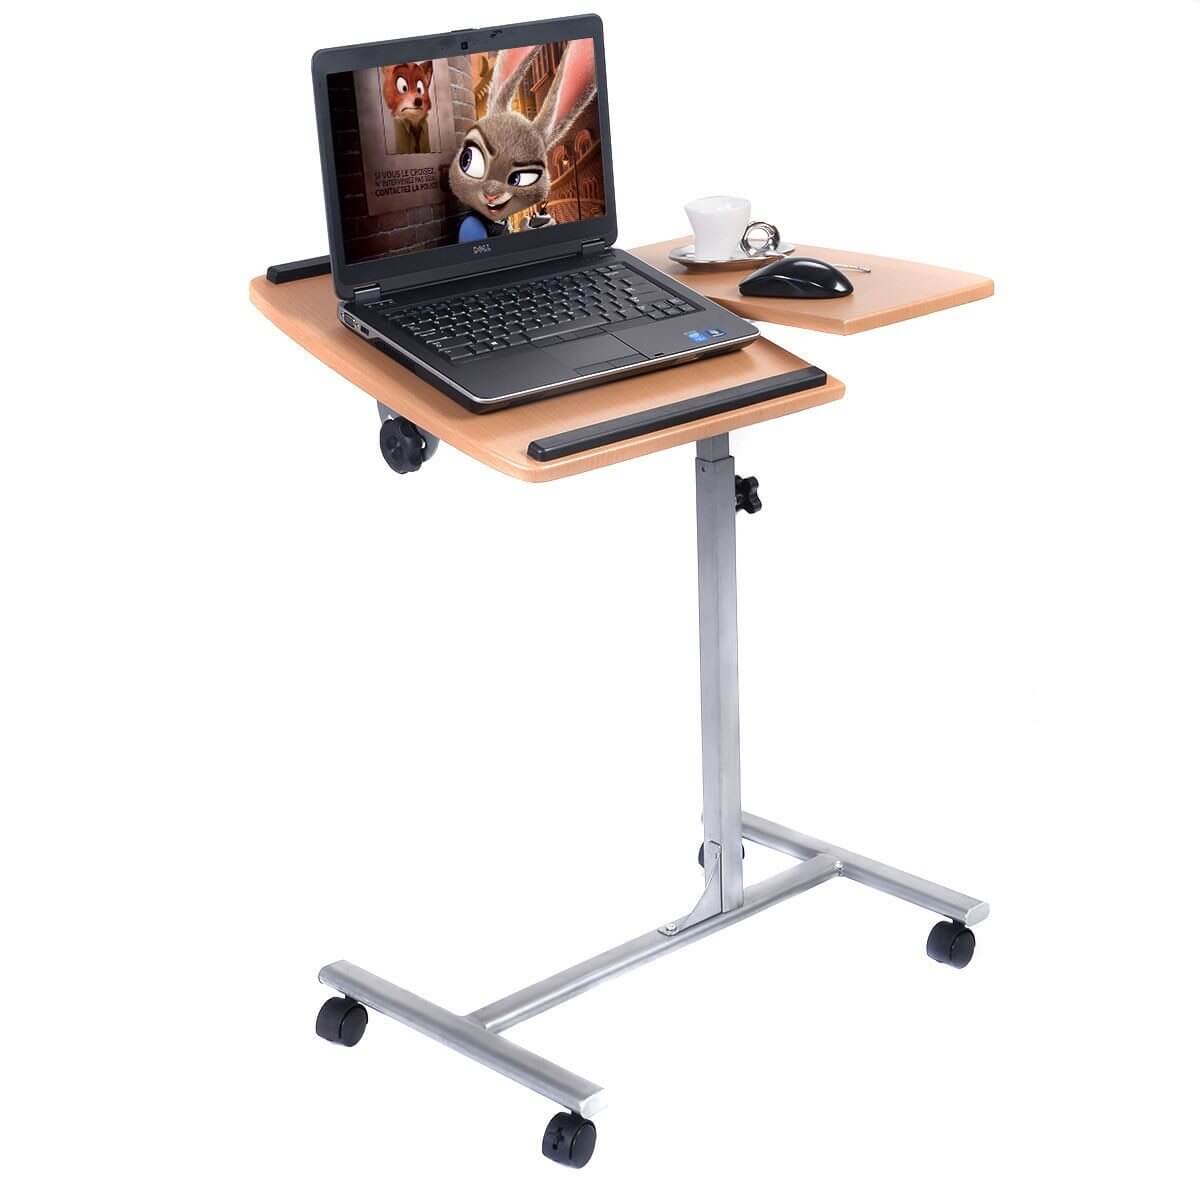 Adjustable Laptop Desk